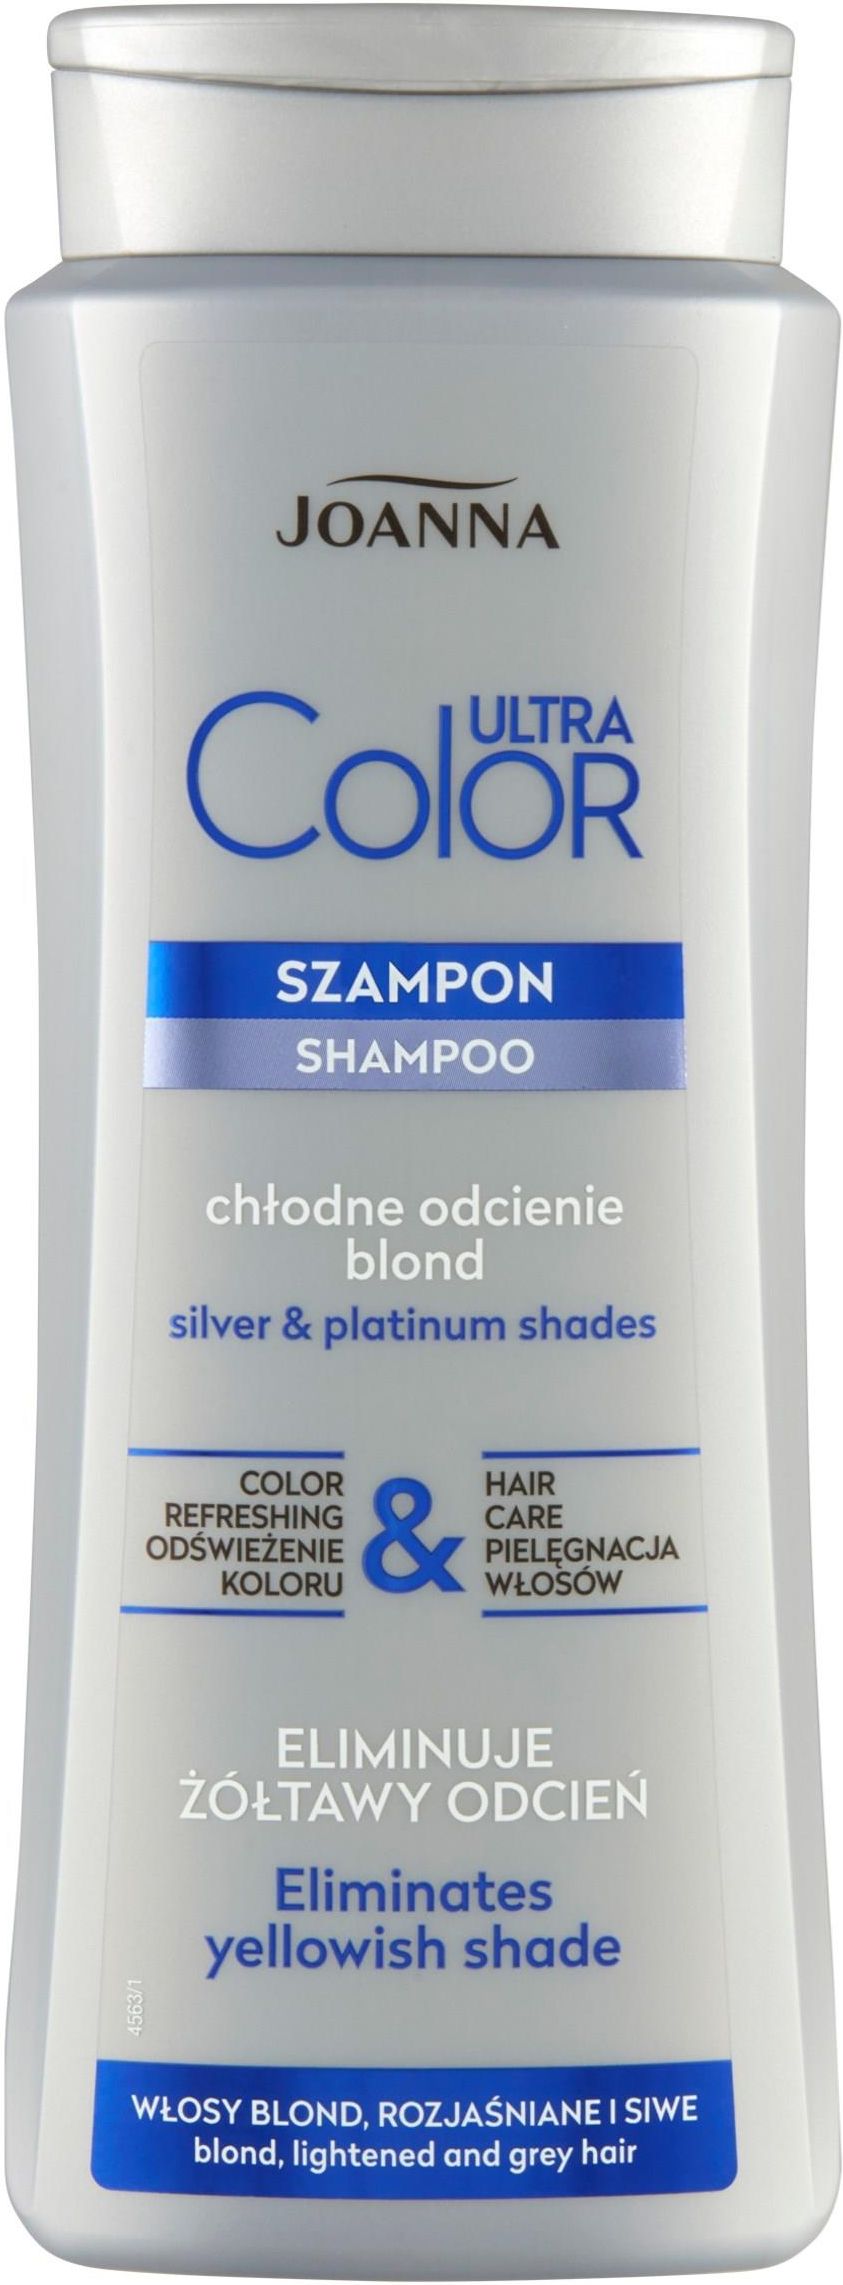 szampon do siwych włosów joanna